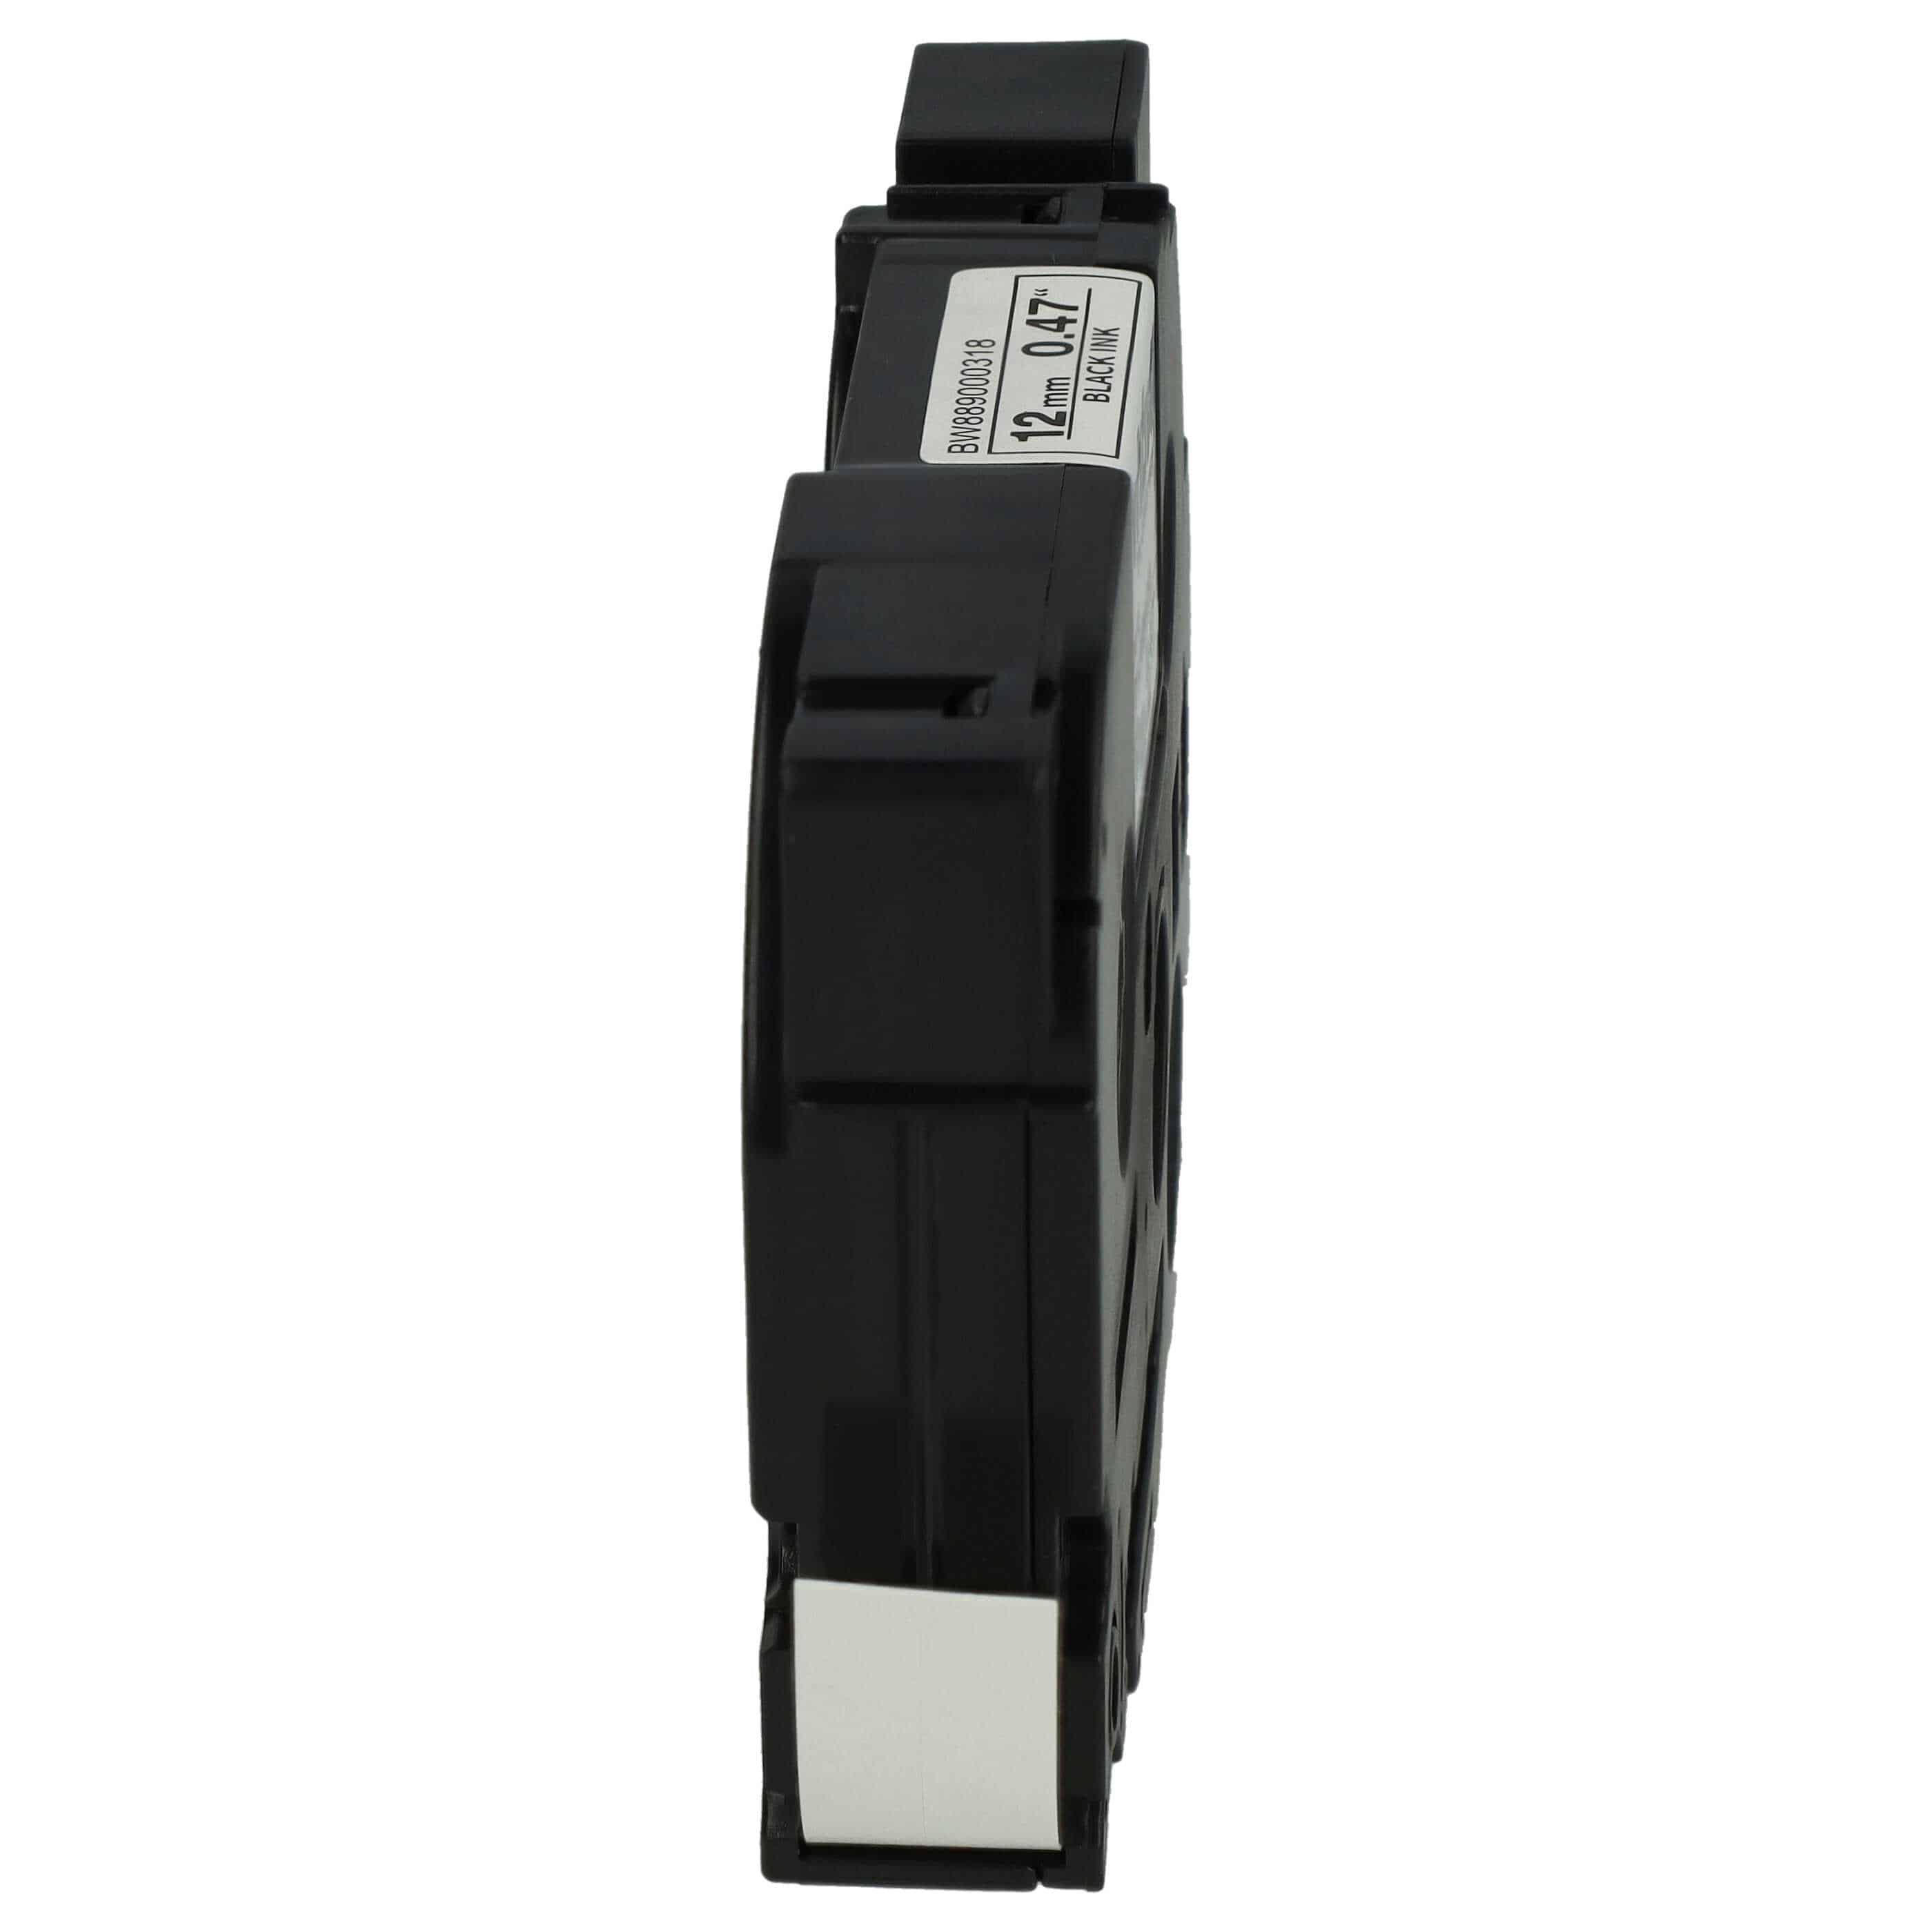 Cassette à ruban remplace Brother TZE-N231 - 12mm lettrage Noir ruban Blanc, plastique